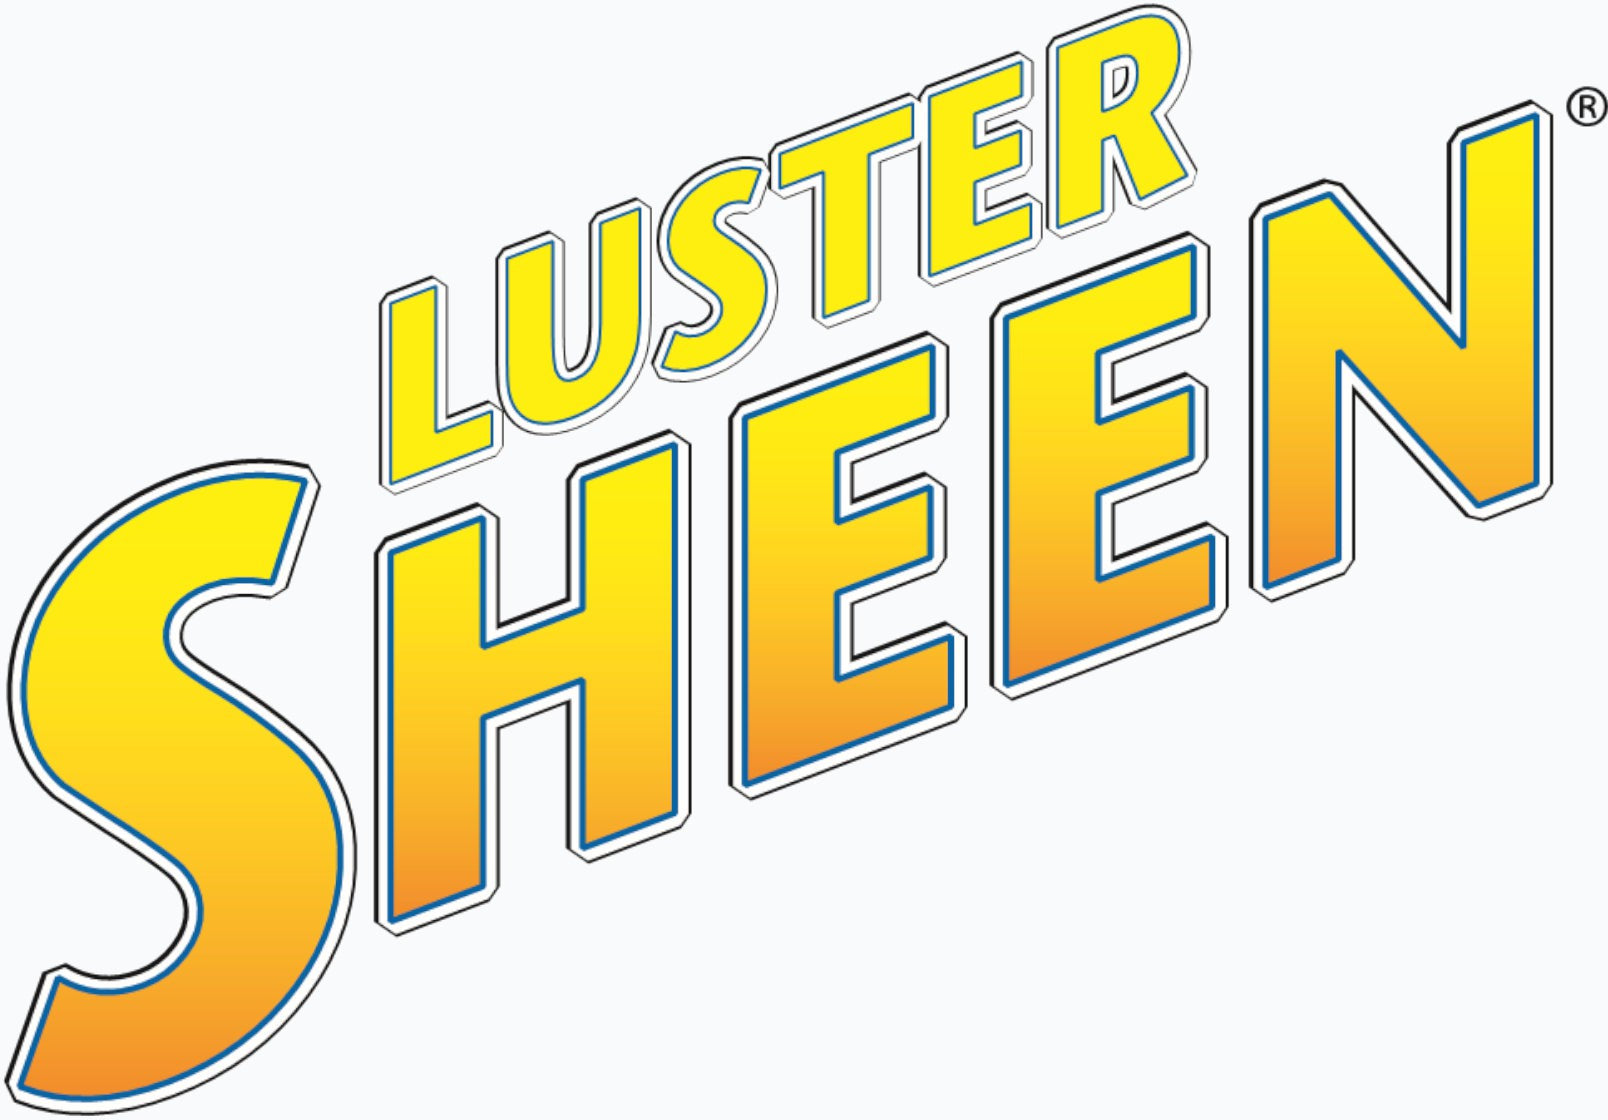 Luster Sheen